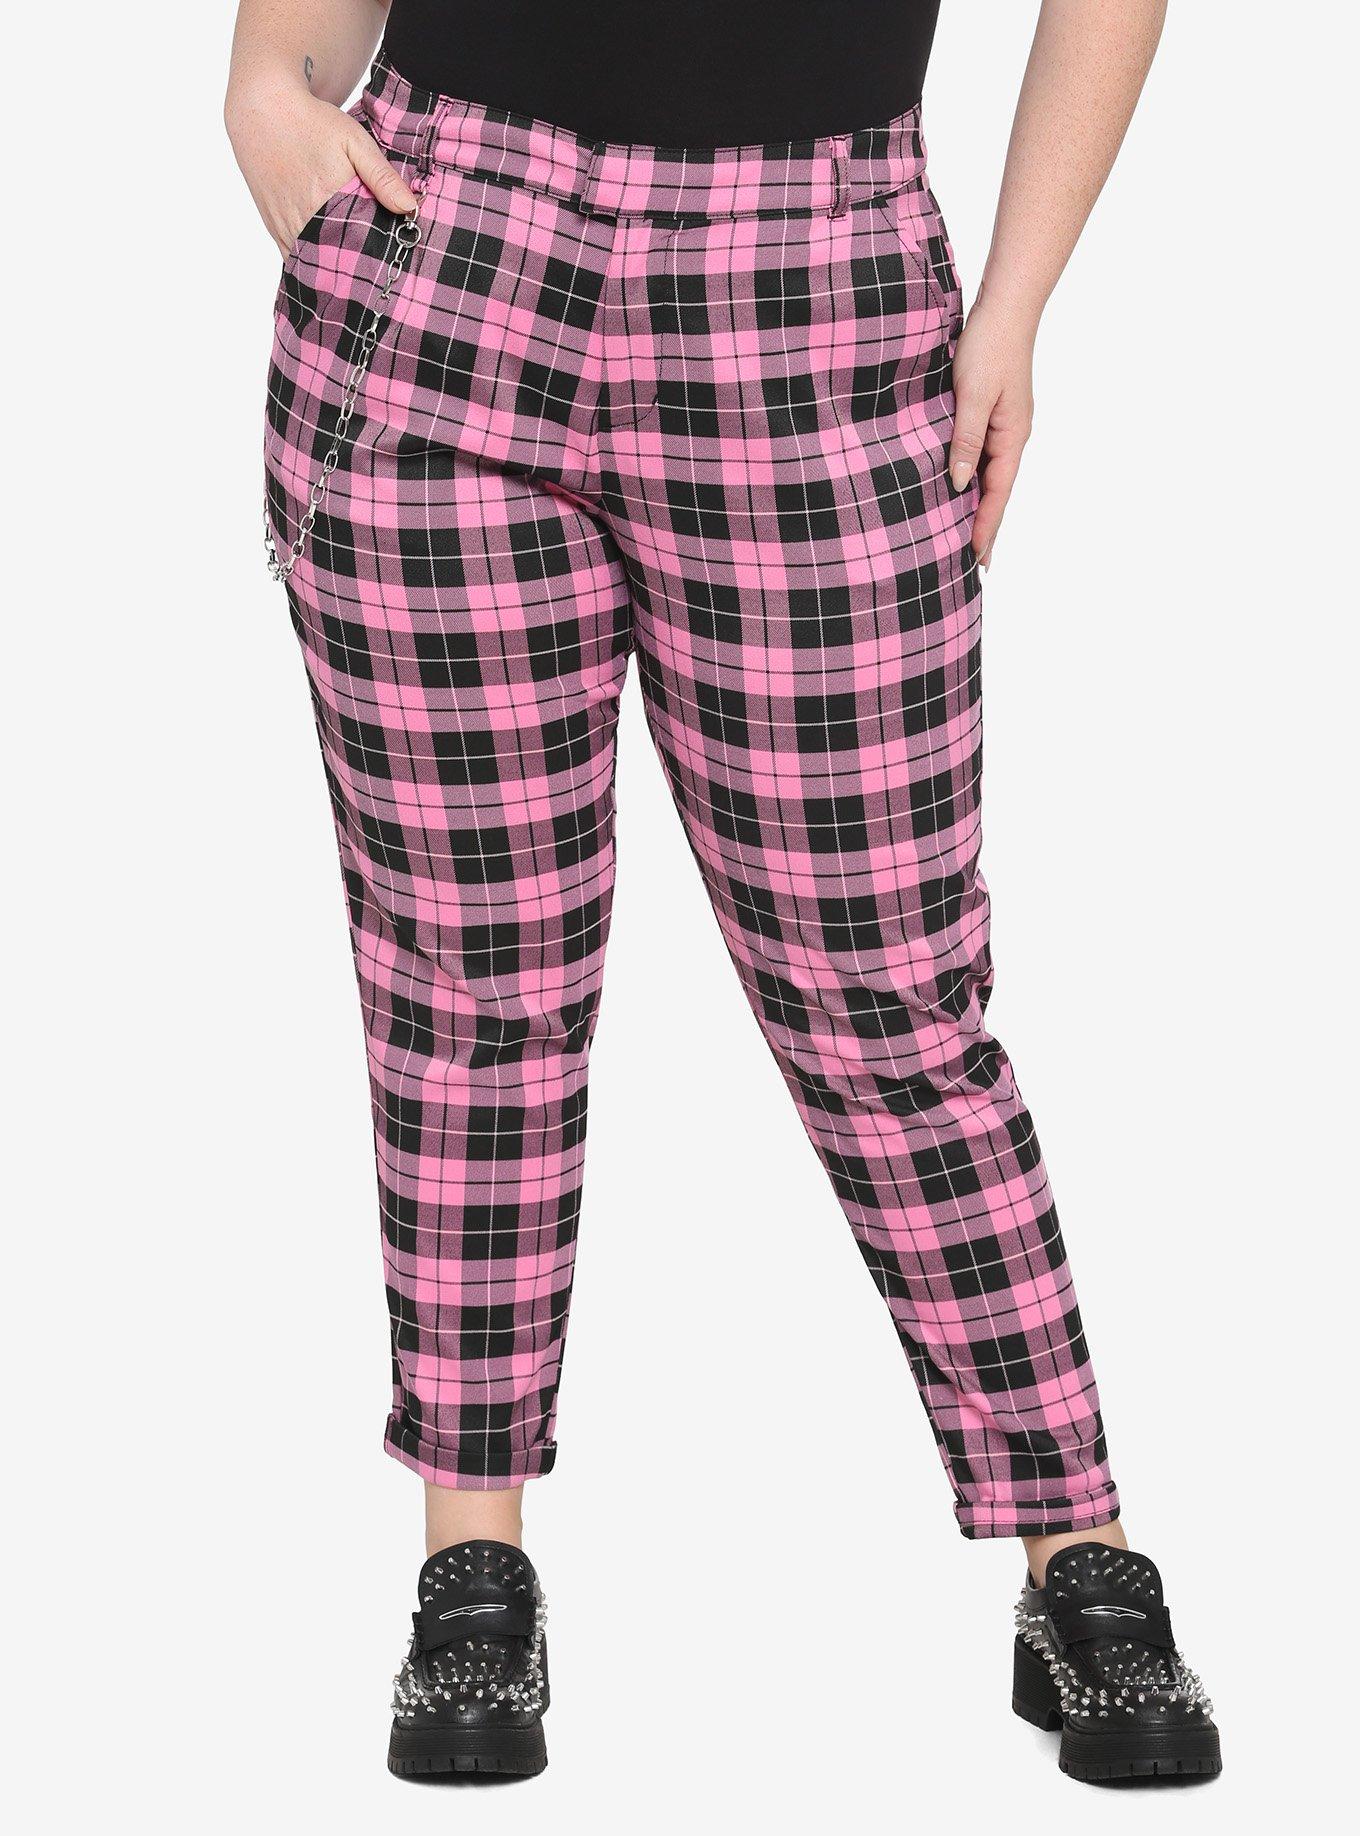 Pink Plaid Pants Plus Size